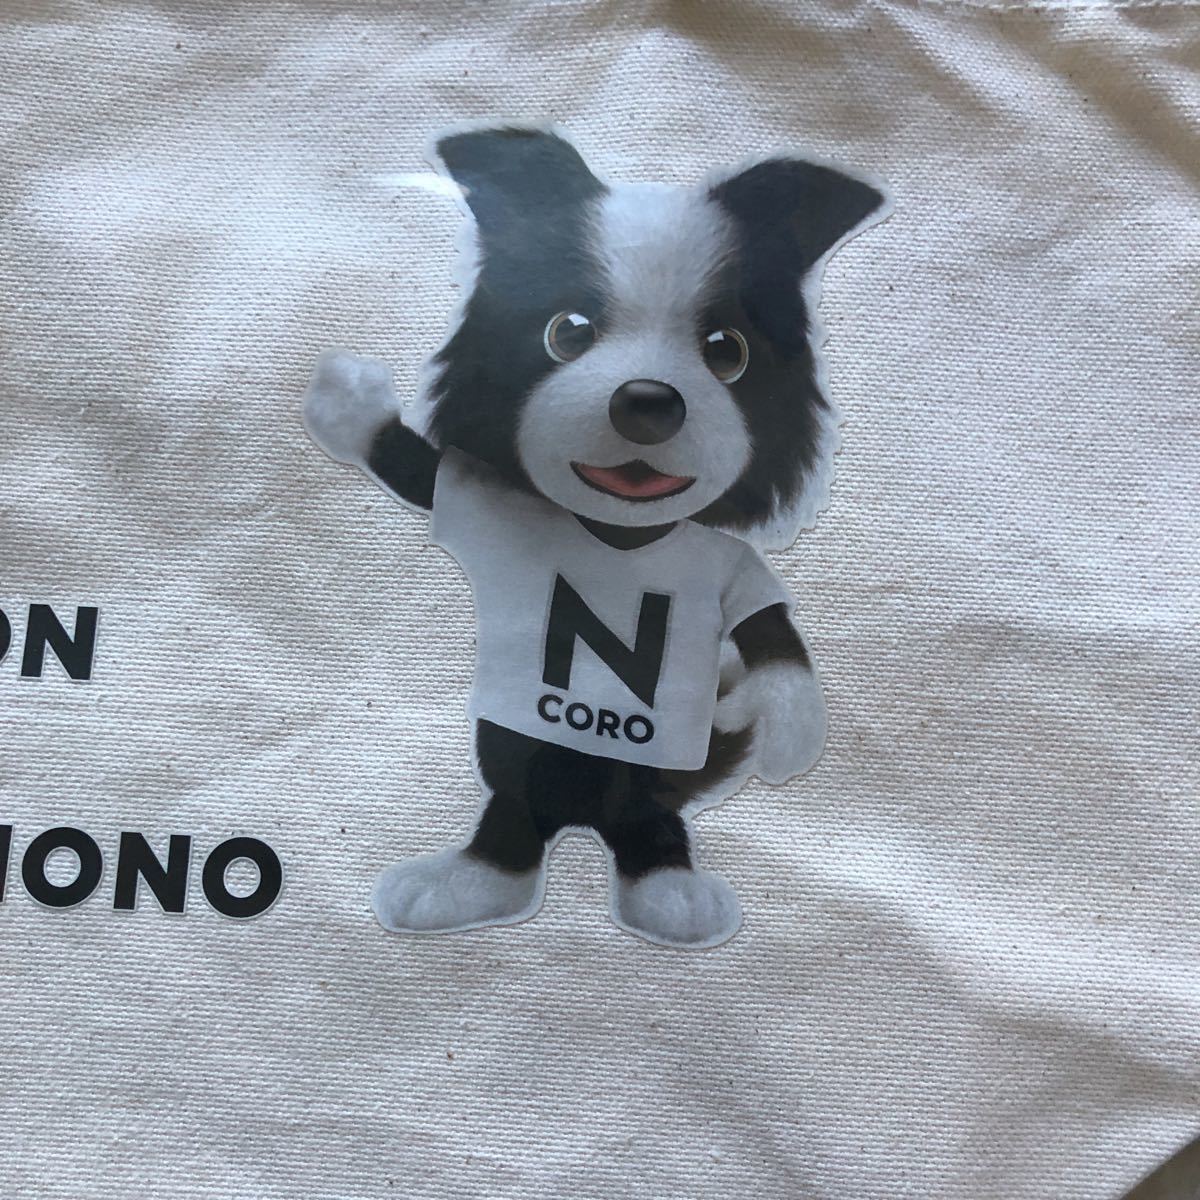  стандартный товар подлинная вещь Honda оригинальный Nkoro kun большая сумка новый товар не использовался редкий негодный номер полная распродажа собака eko окружающая среда F1 гонки 